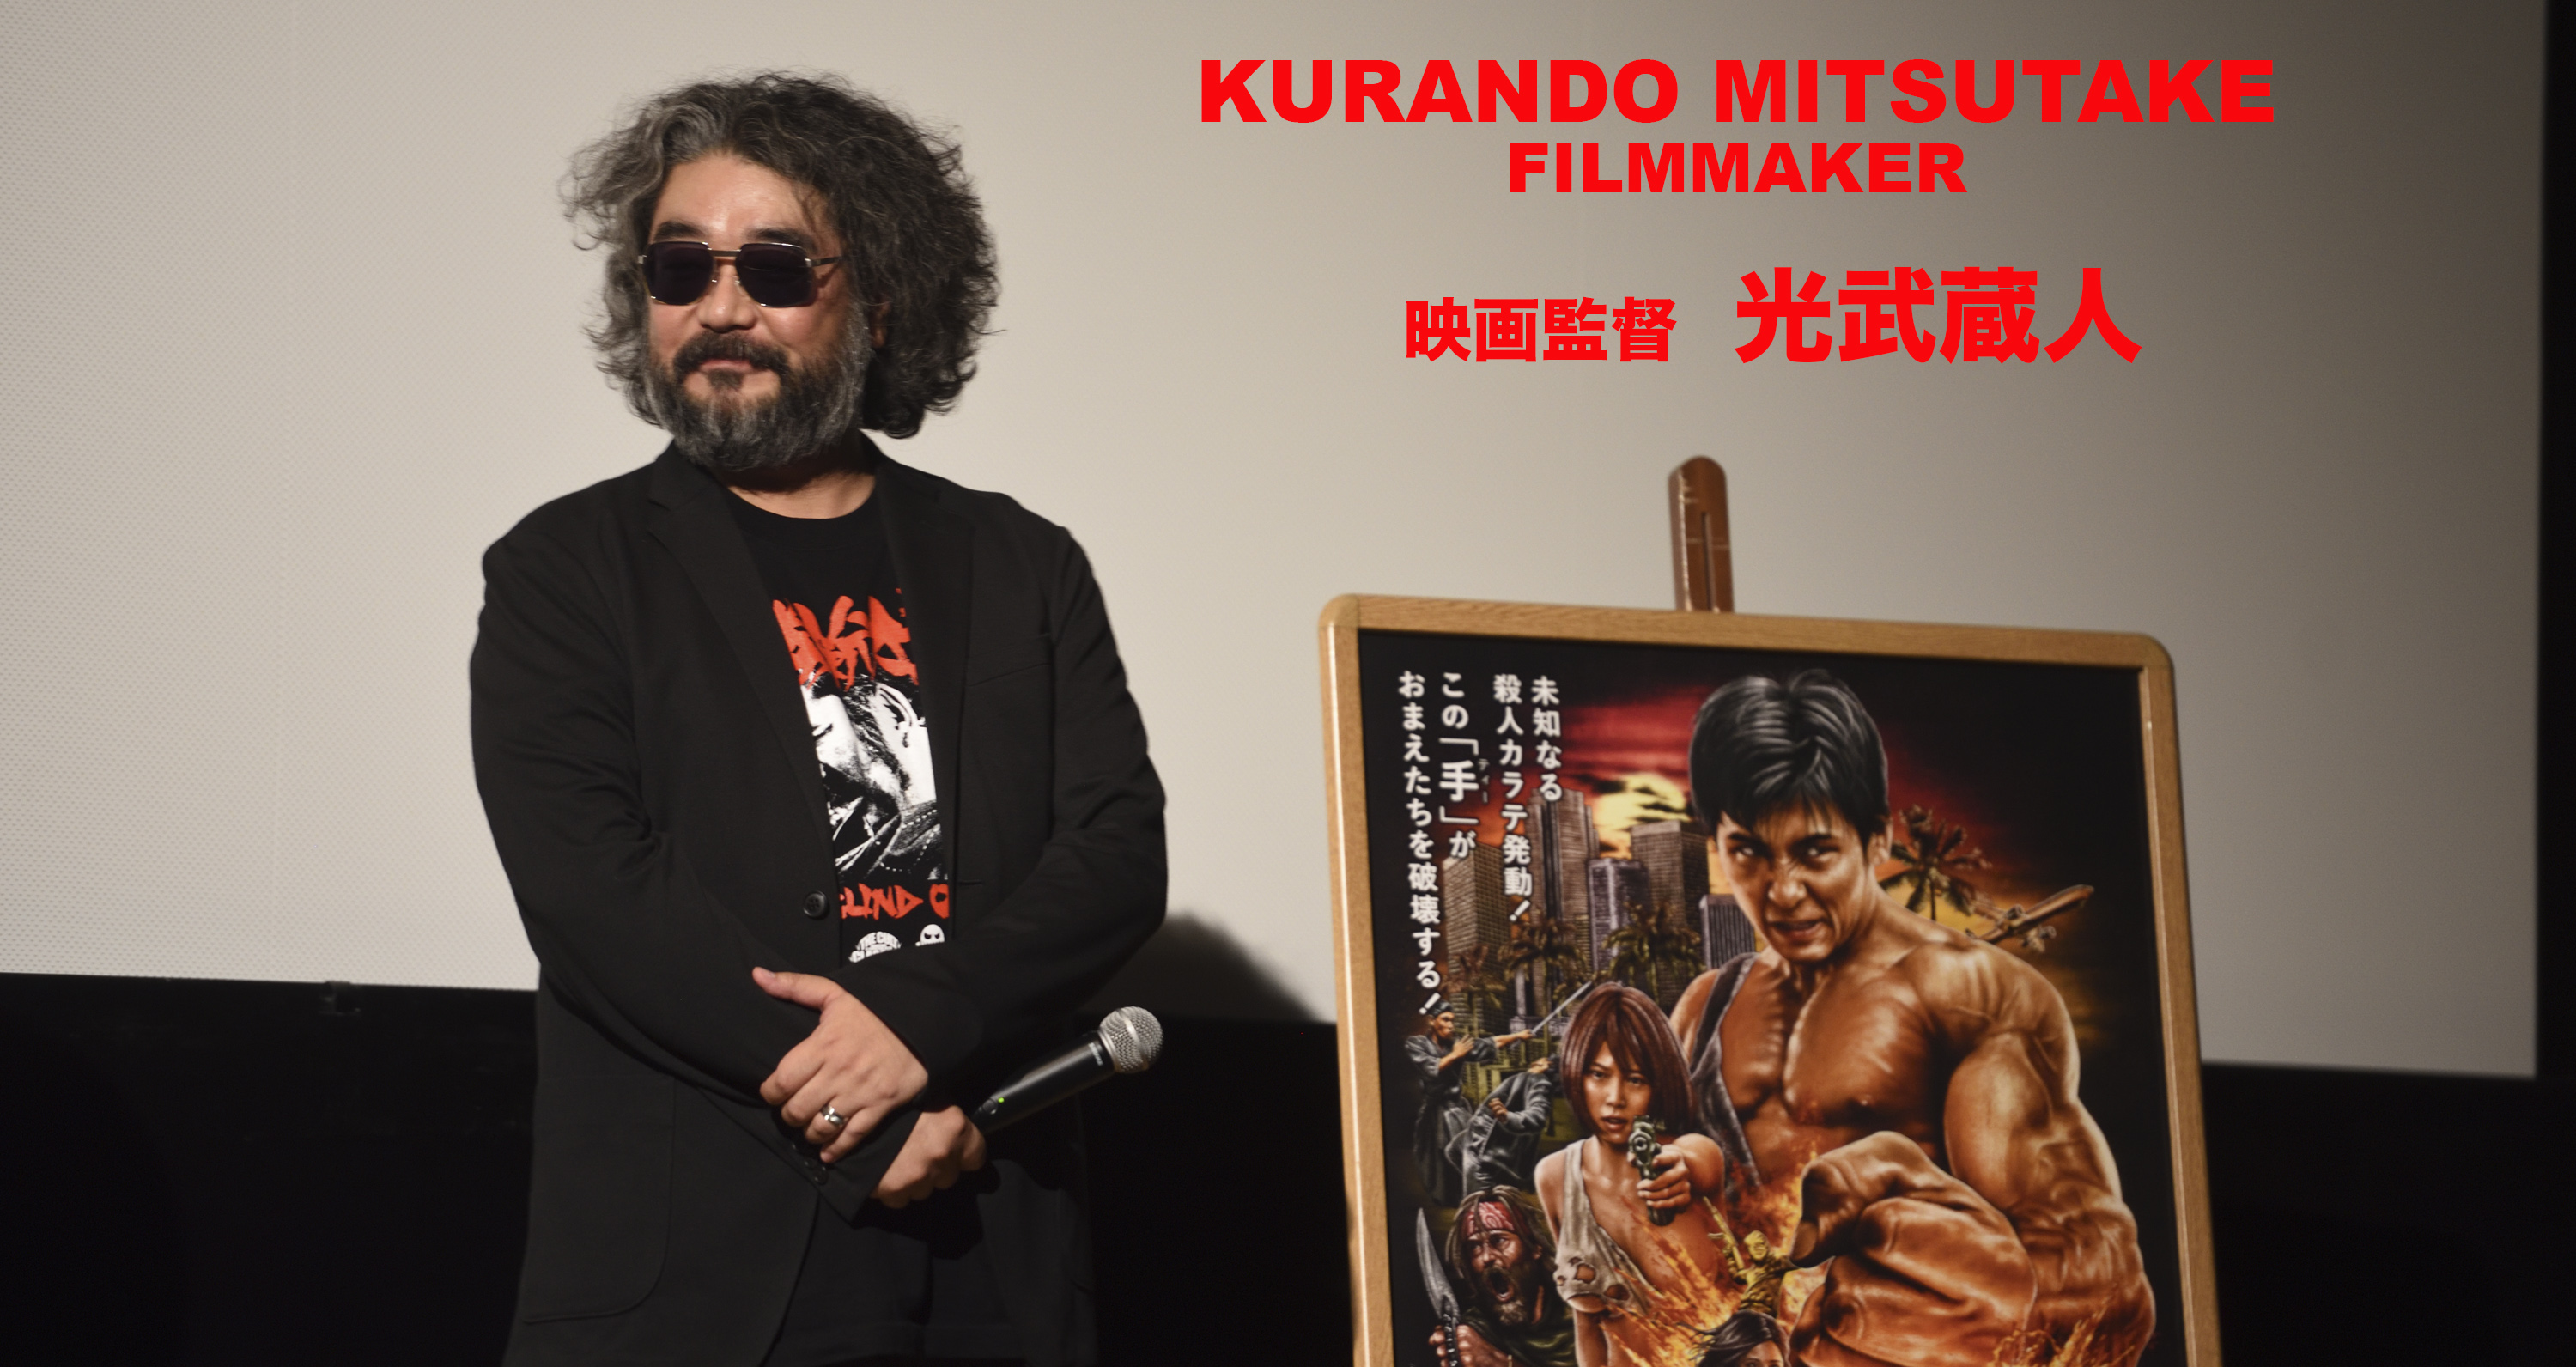 Kurando Mitsutake Official Website